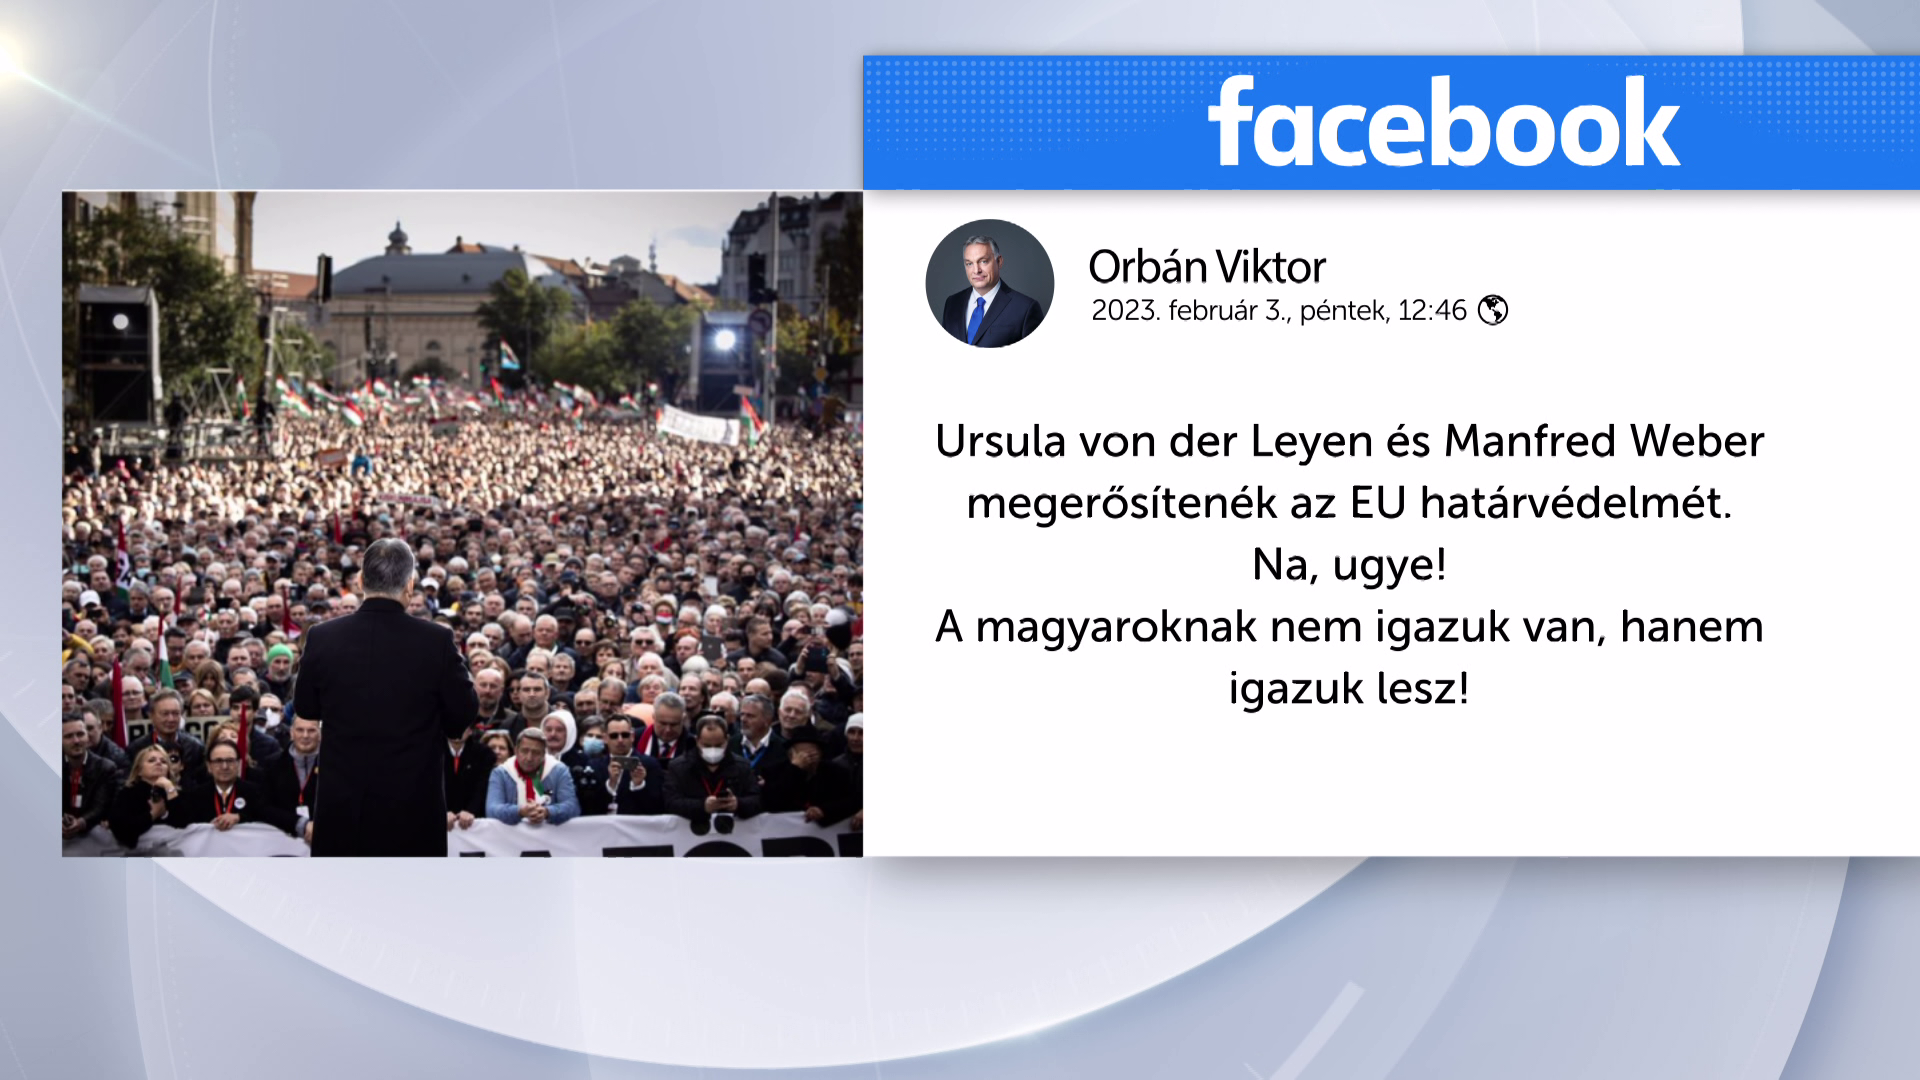 Orbán Viktor: A magyaroknak nem igazuk van, hanem igazuk lesz!